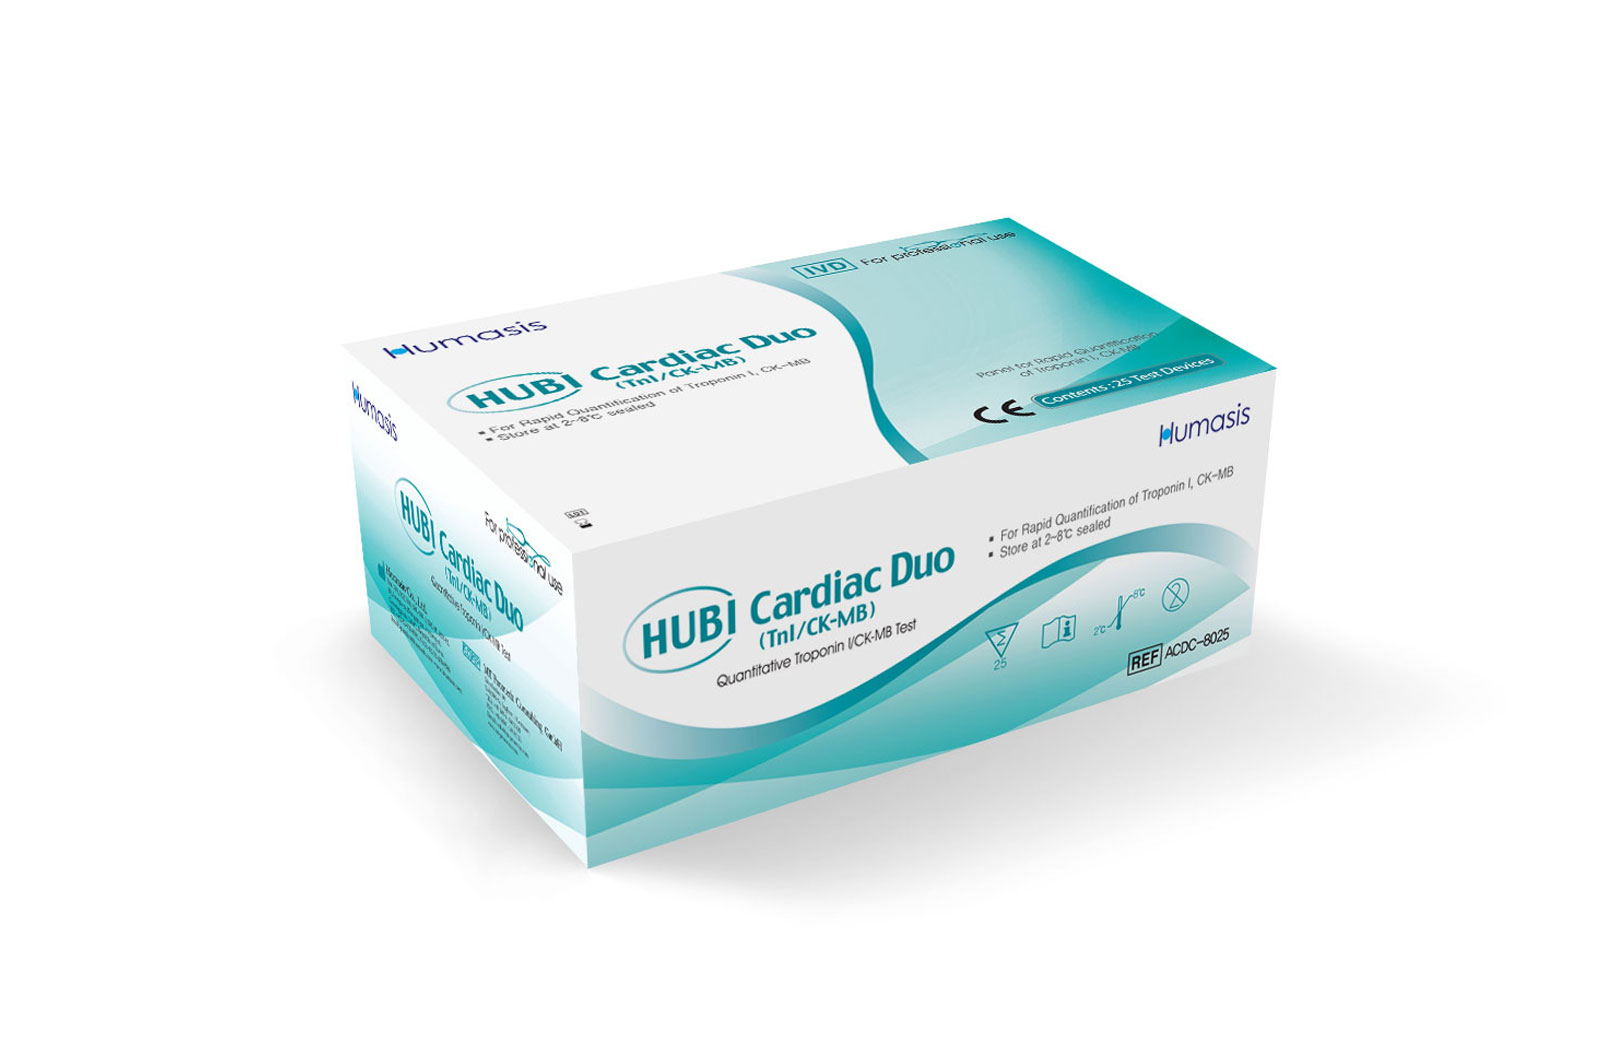 HUBI Cardiac DUO (TnI/CK-MB)